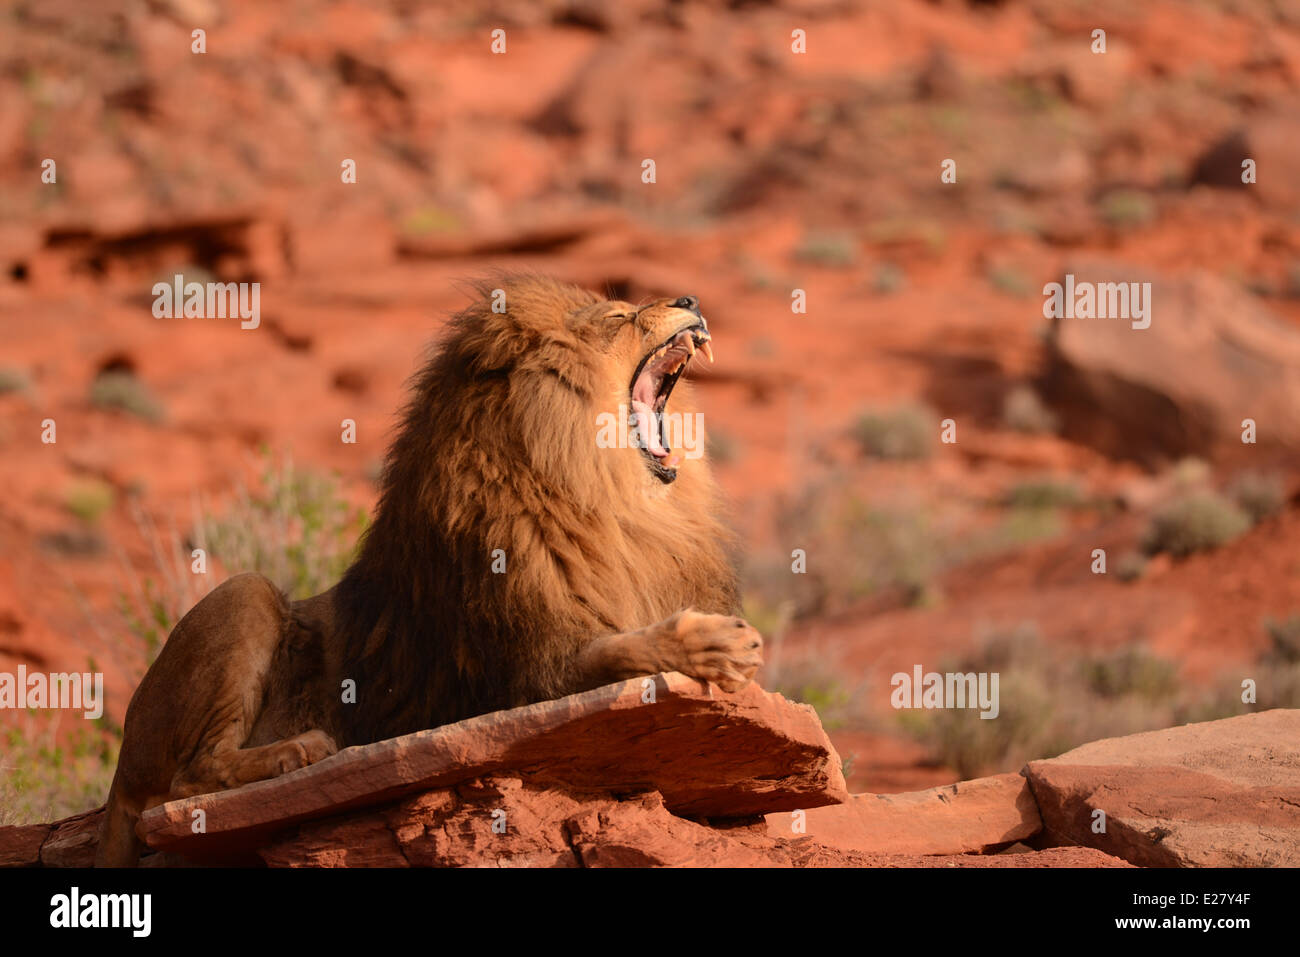 Roaring lion mâle assis sur une barre rocheuse Banque D'Images